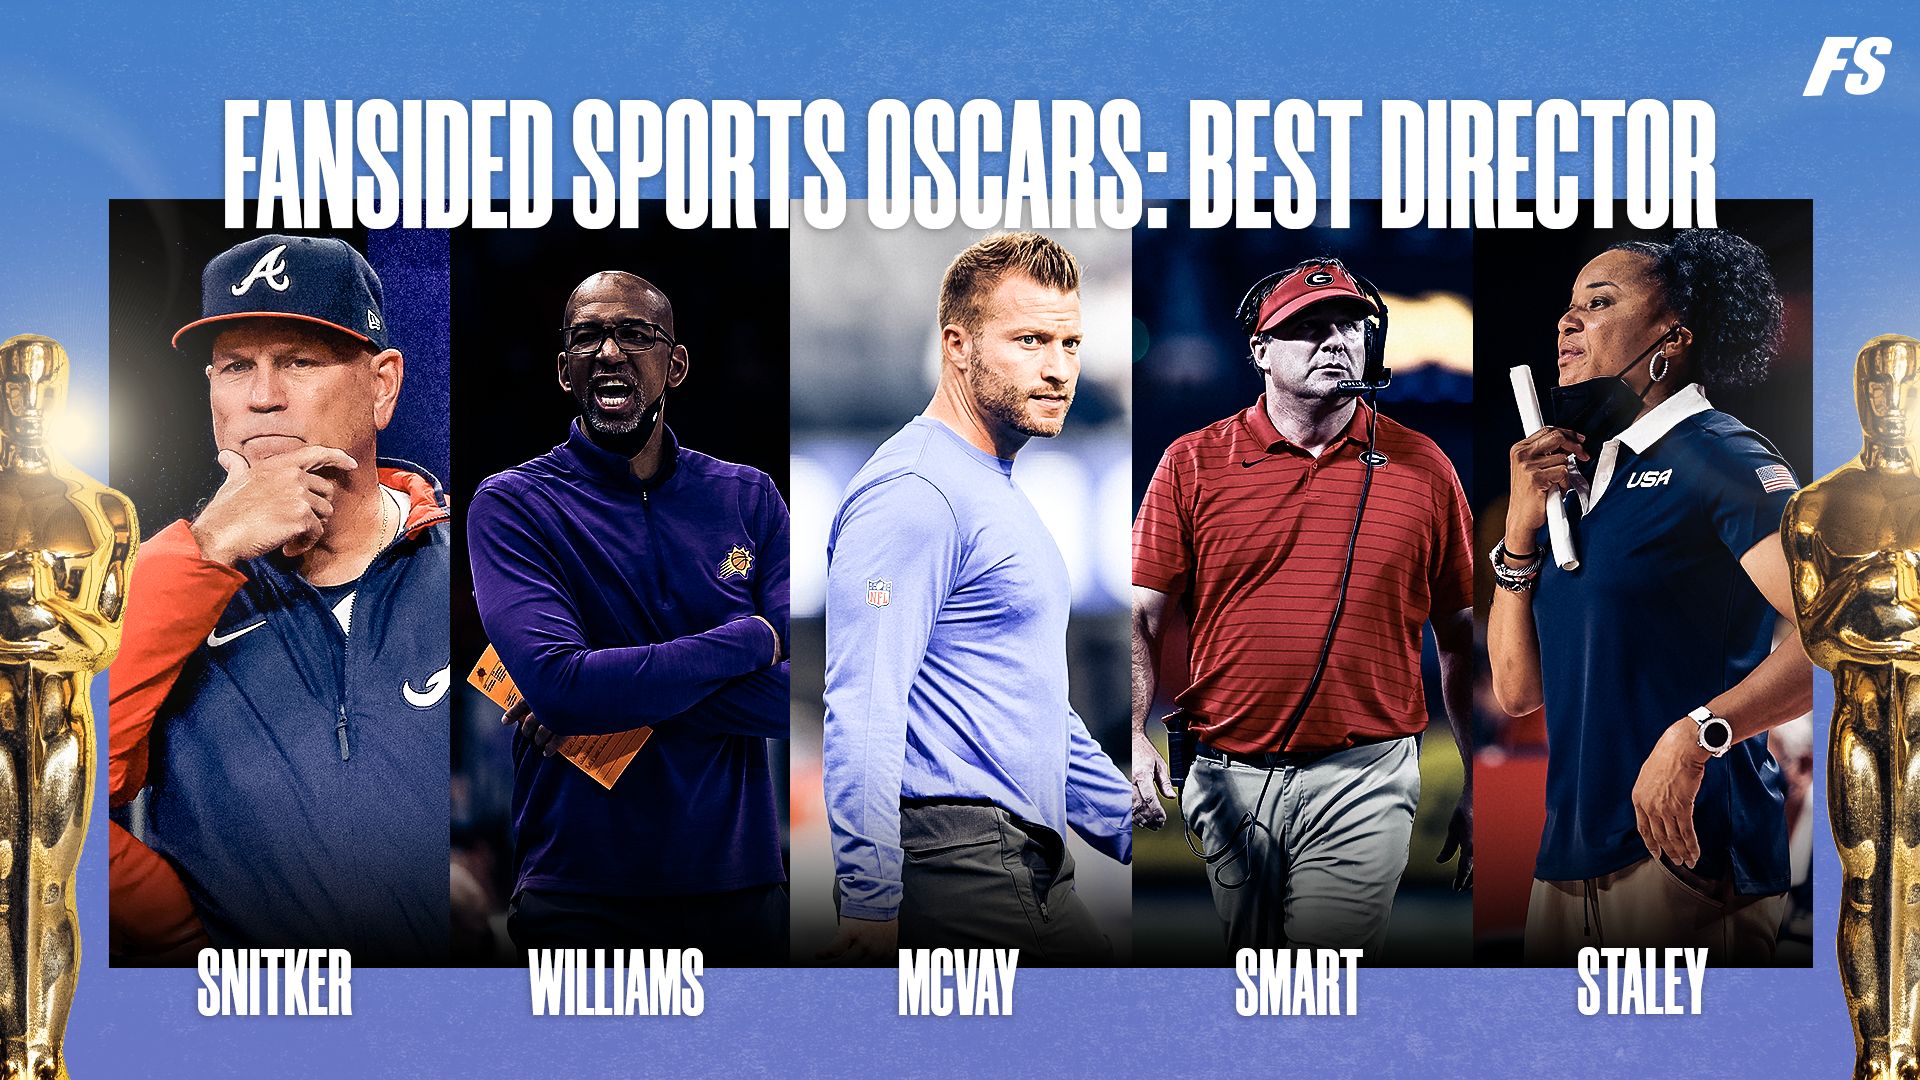 Best Director nominees